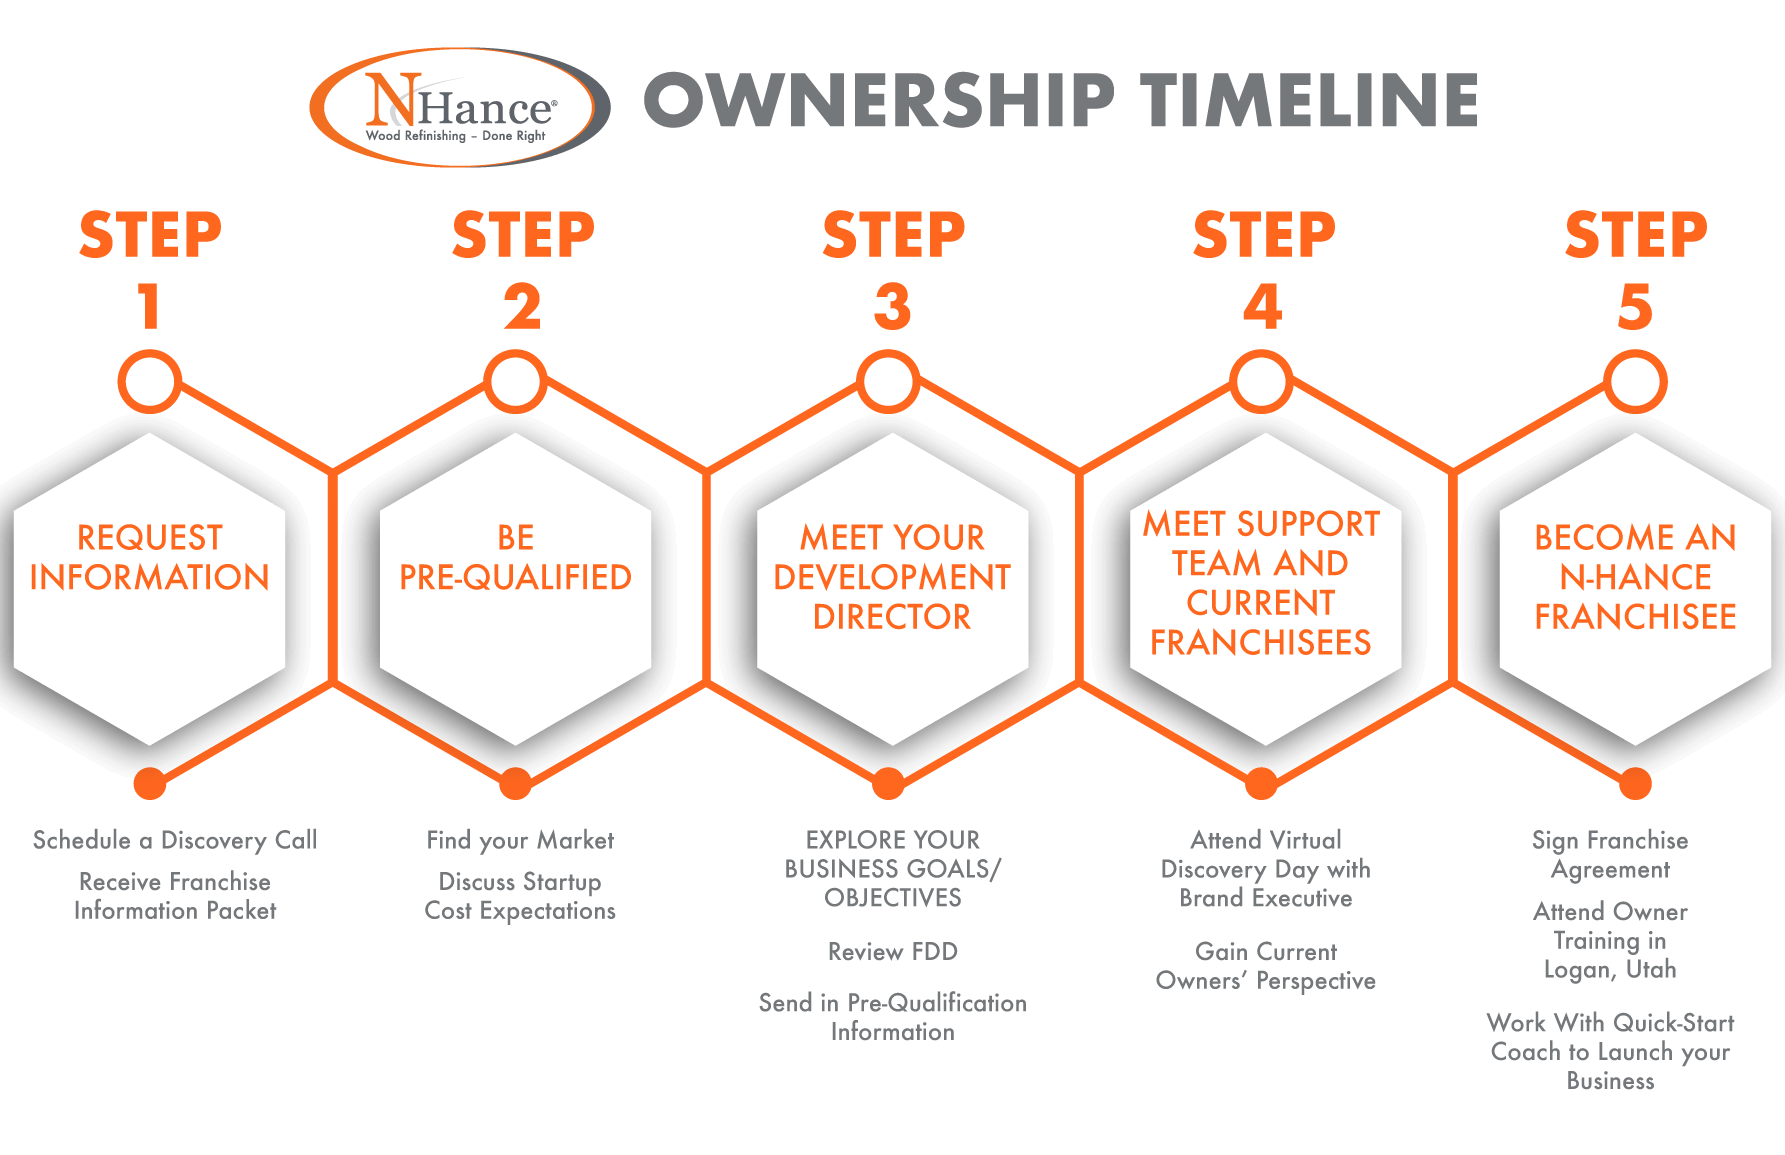 N-Hance Franchise ownership timeline